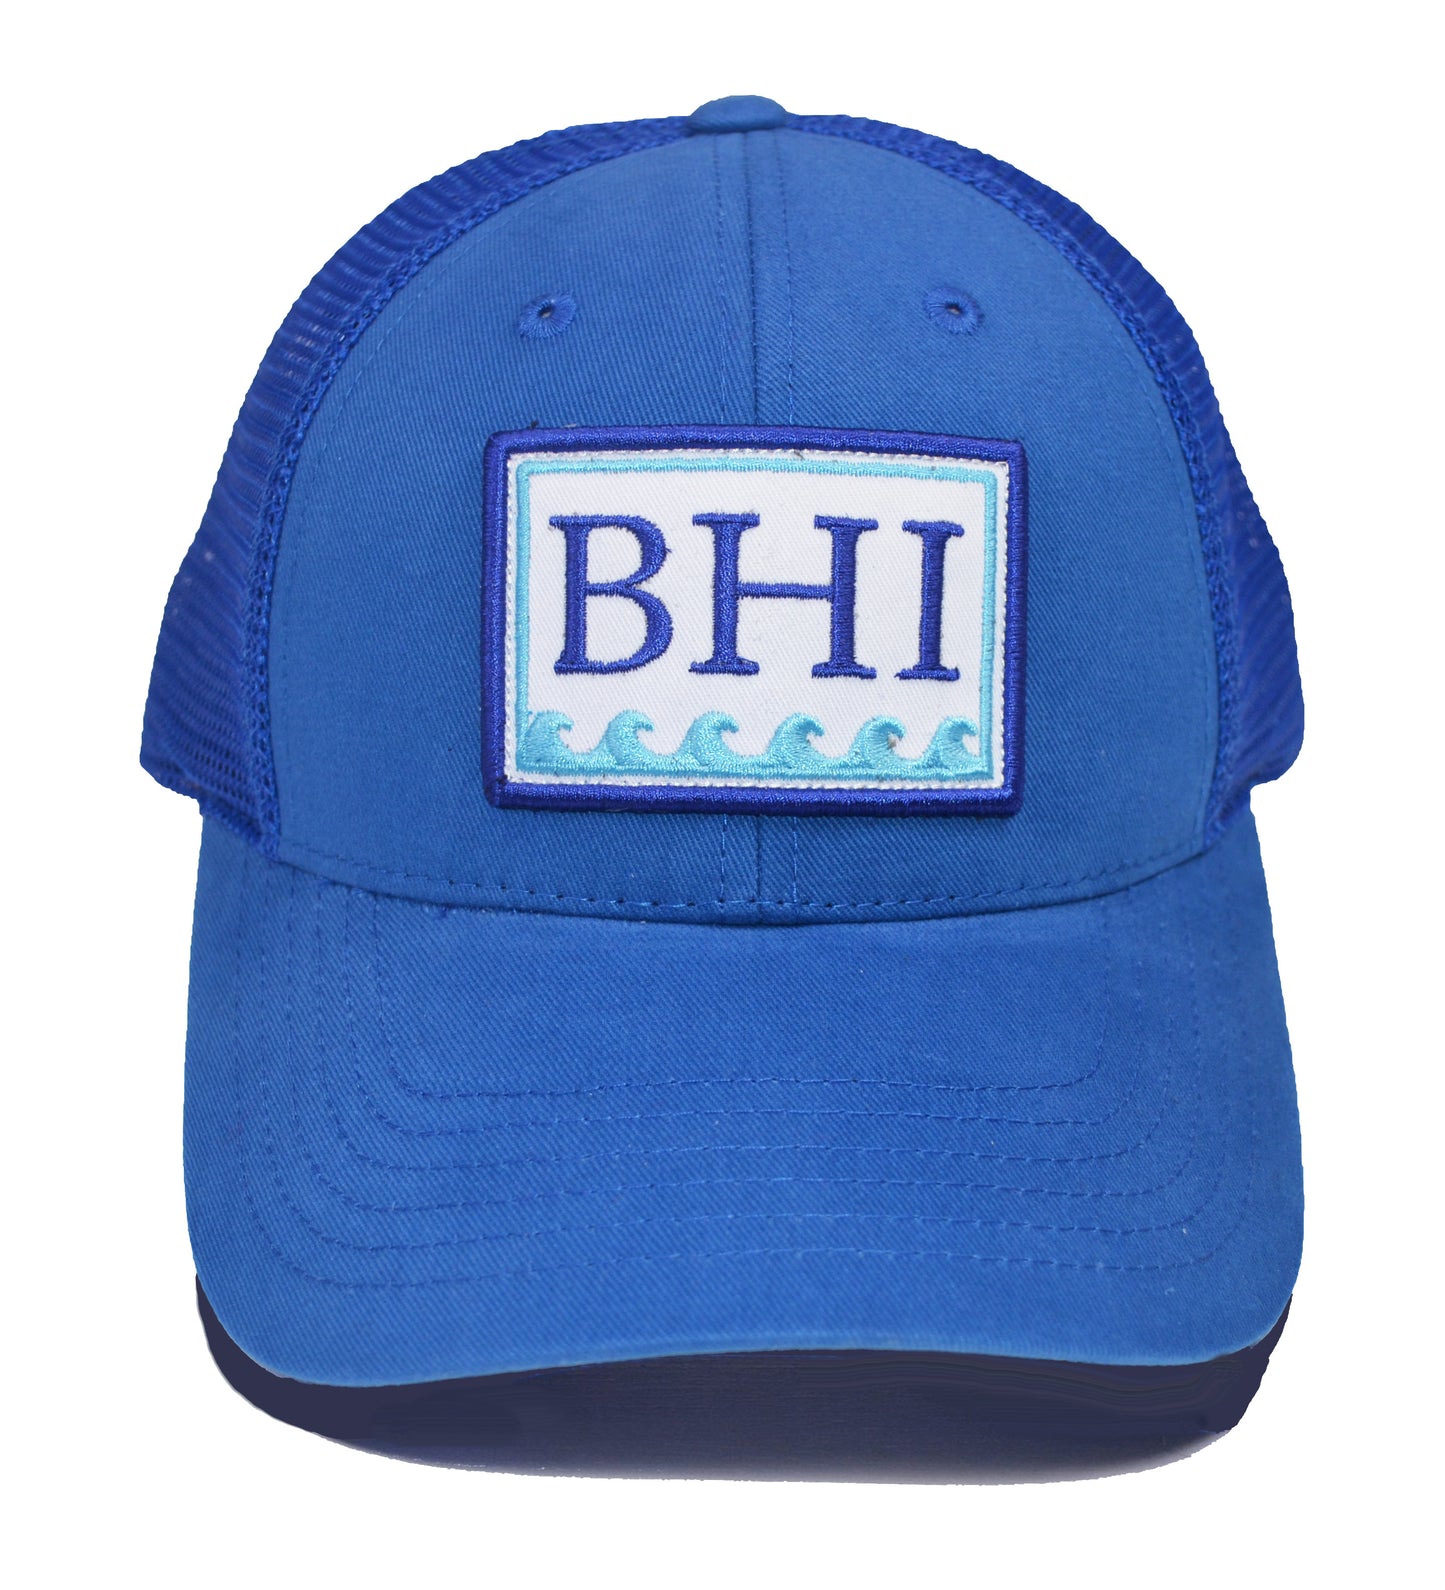 BHI Trucker Hat - Royal Blue